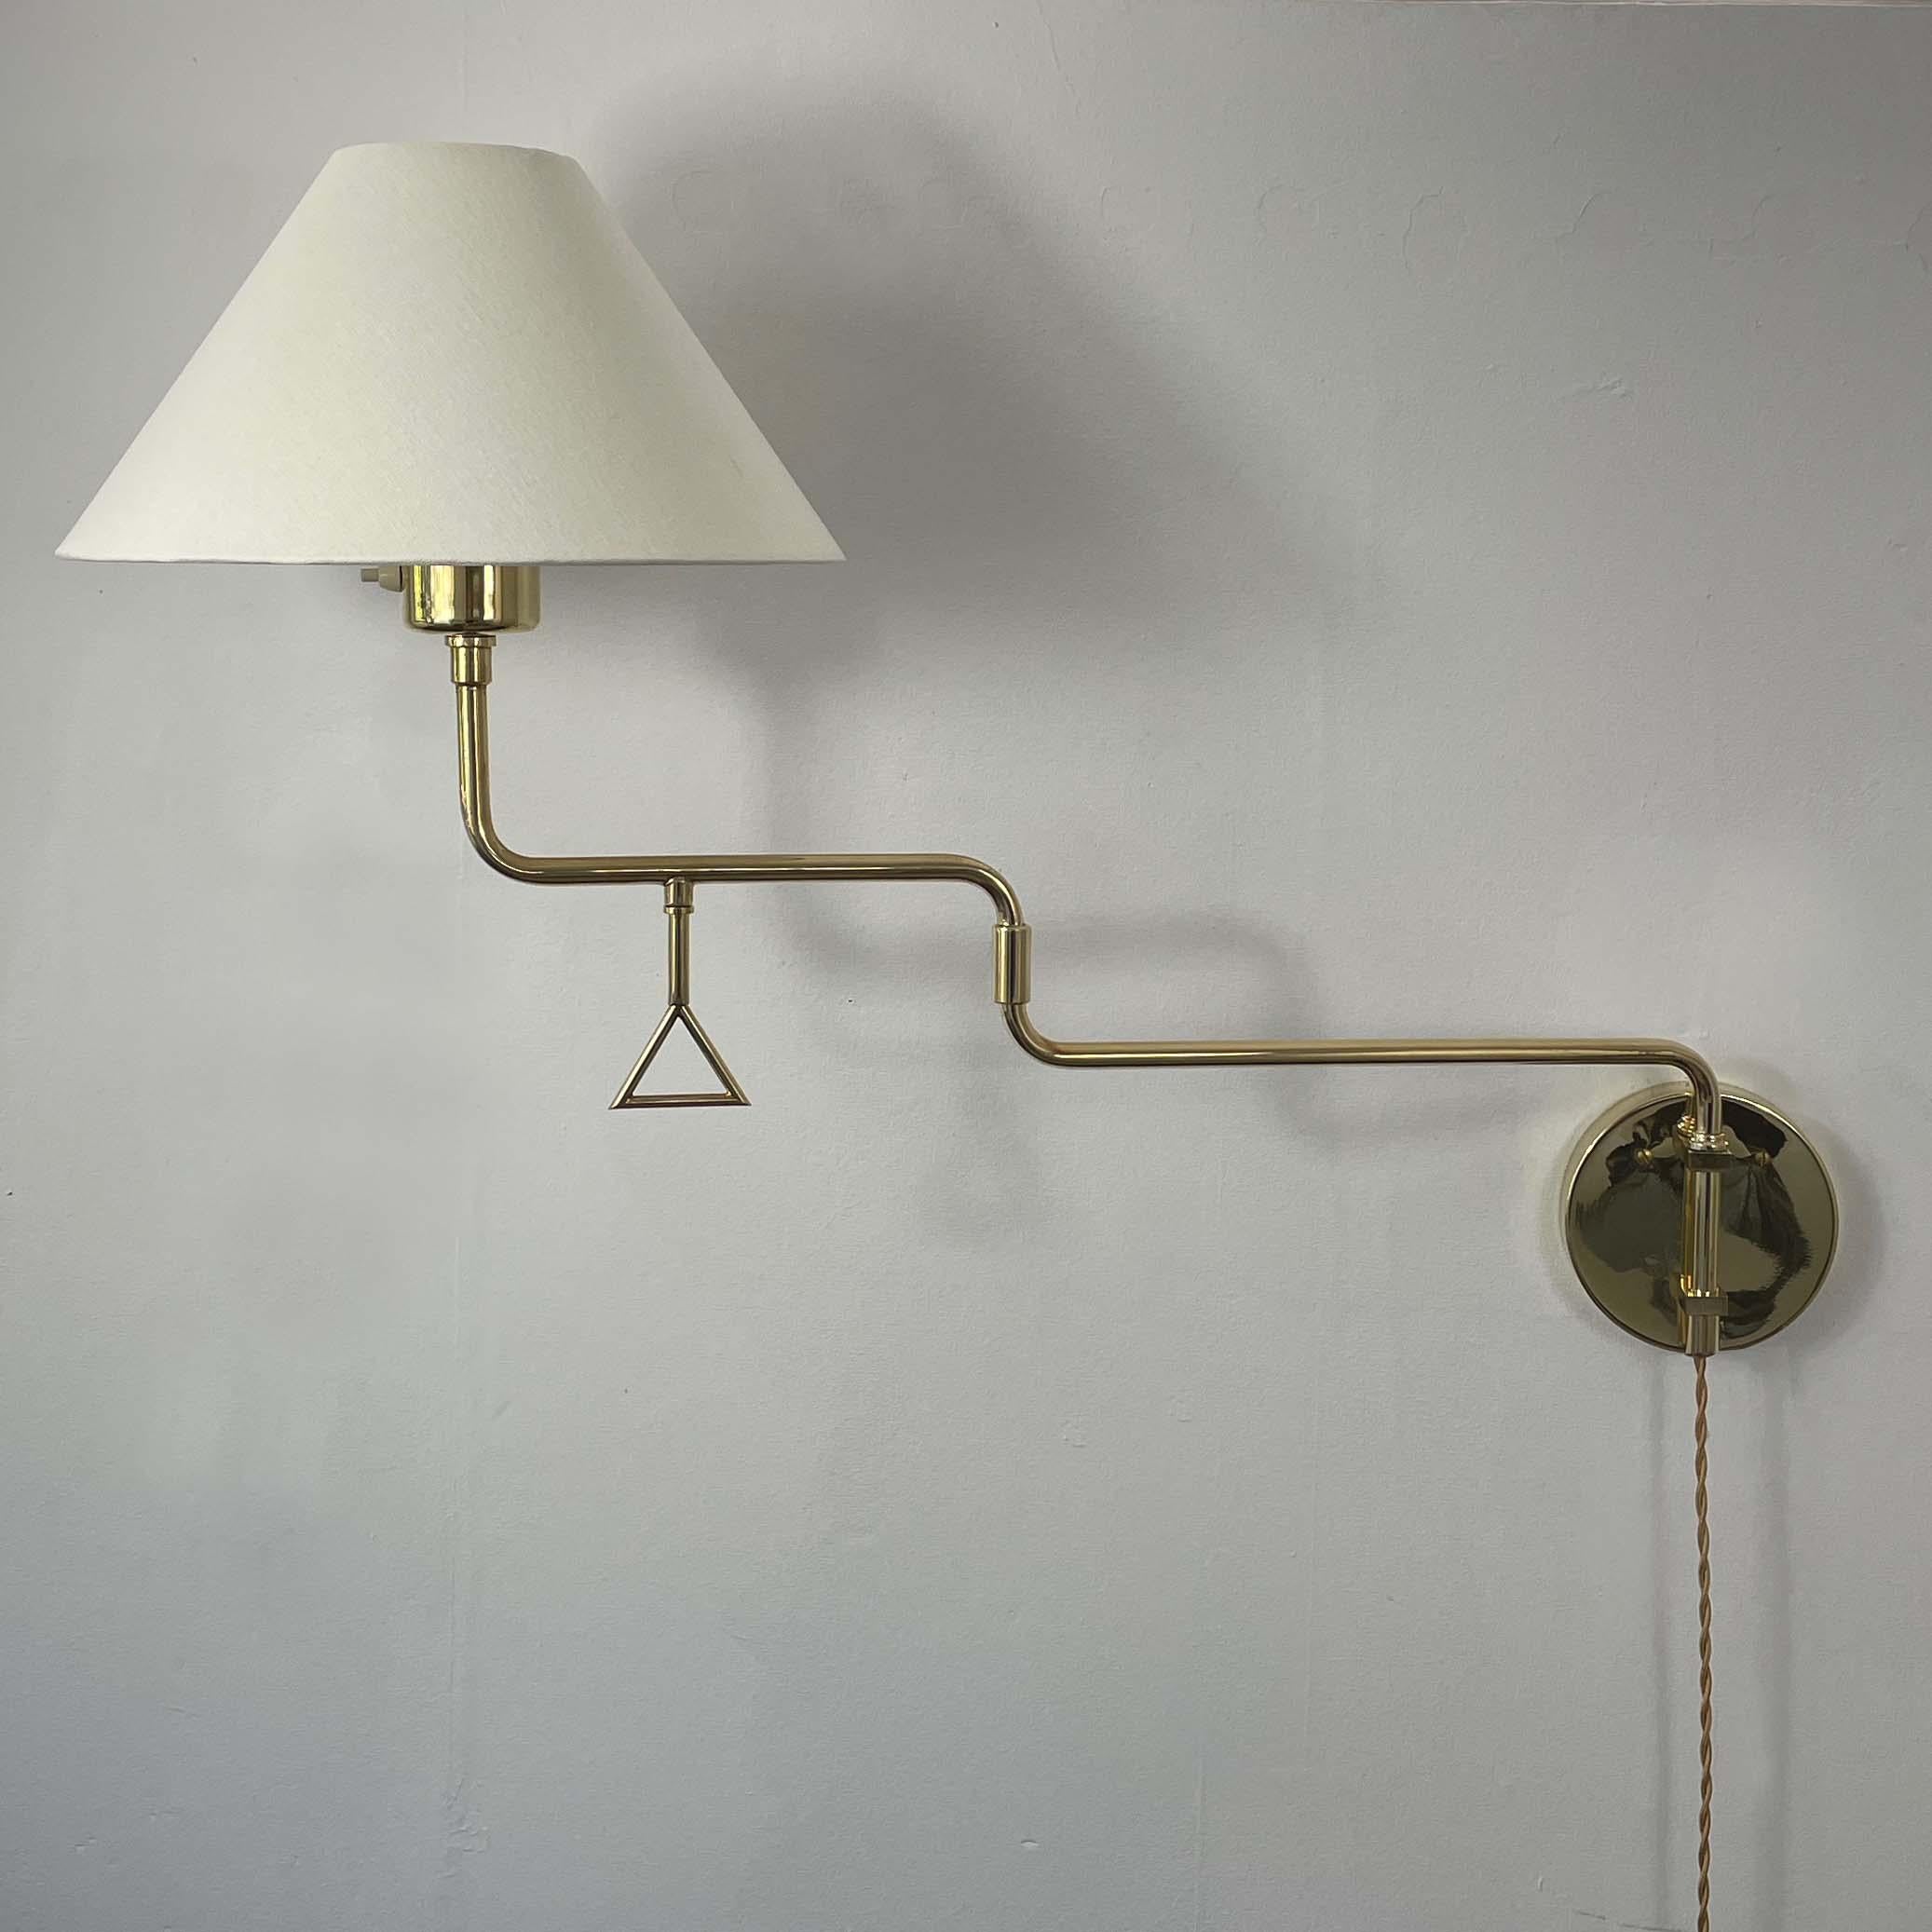 Articulating Brass Wall Light, Armatur Hantverk Tibro, Sweden 1950s For Sale 5